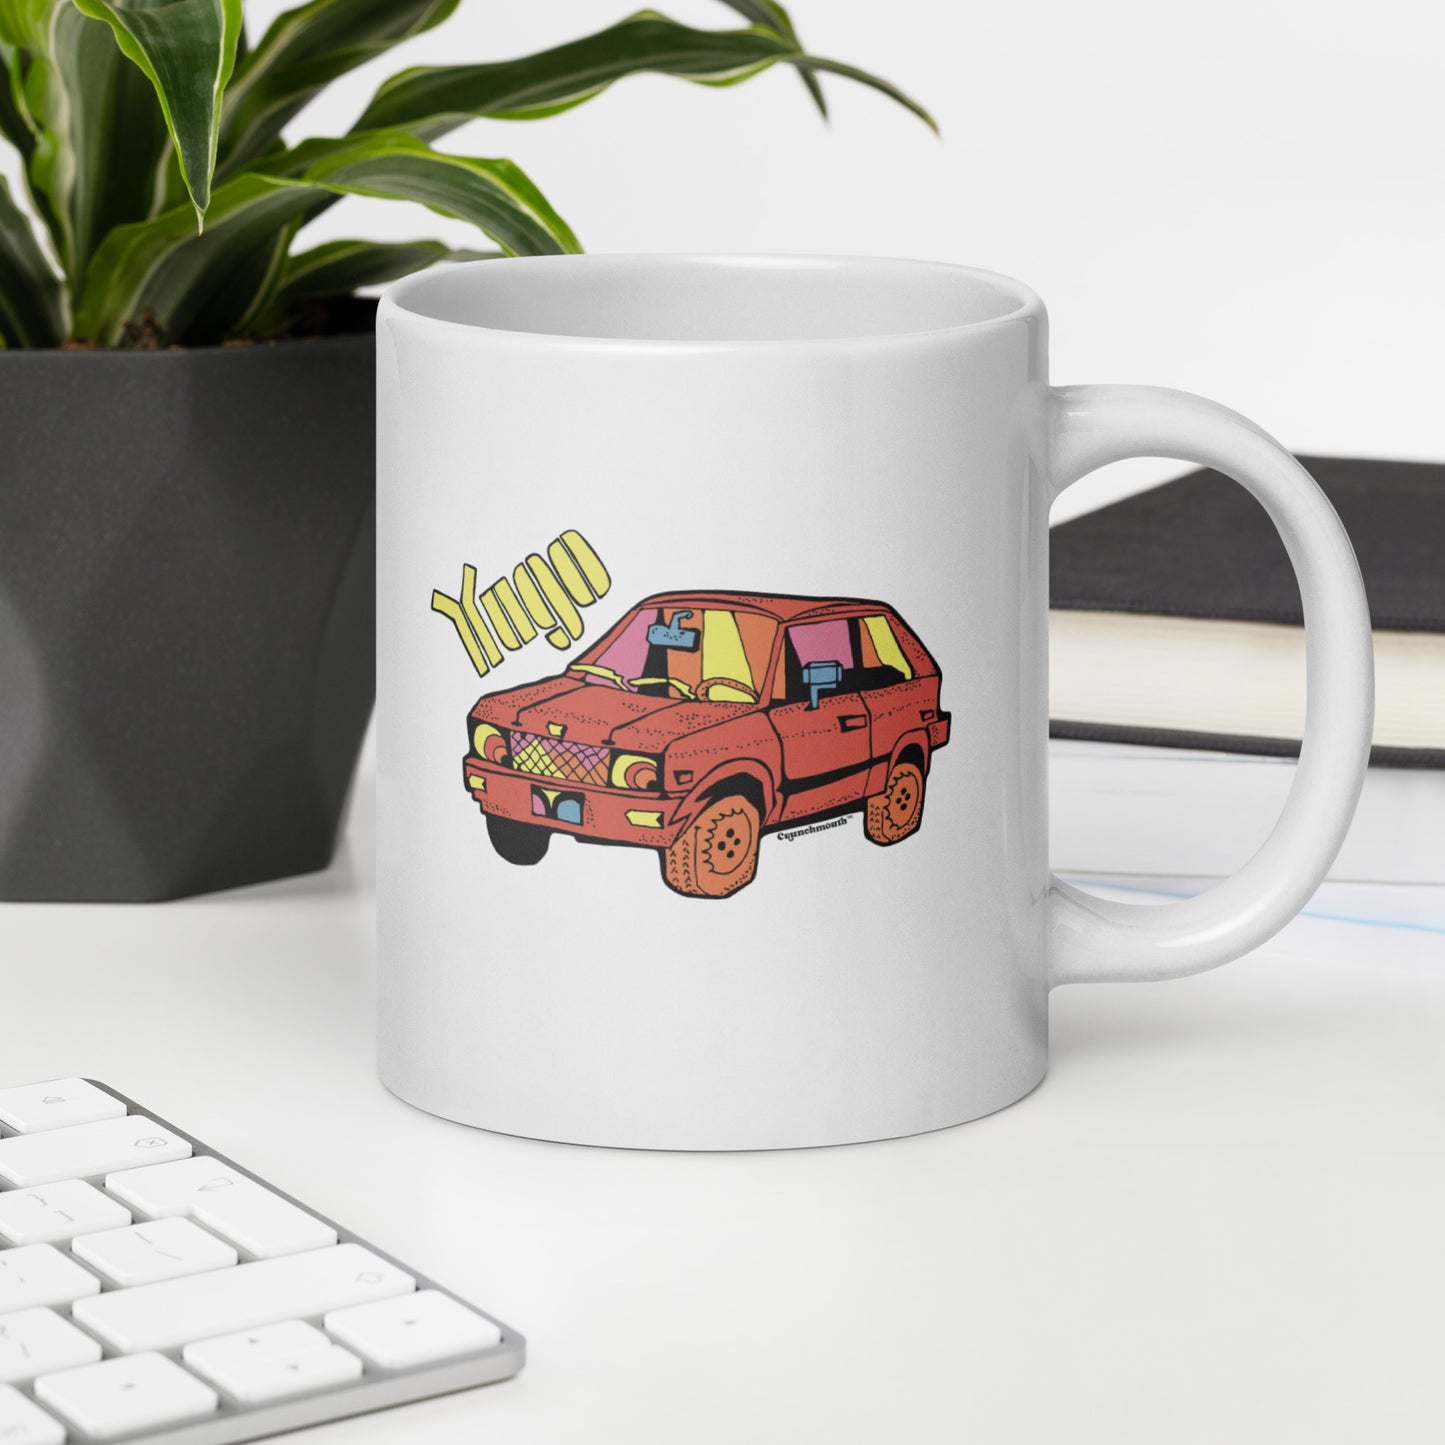 yugo automobile coffee mug